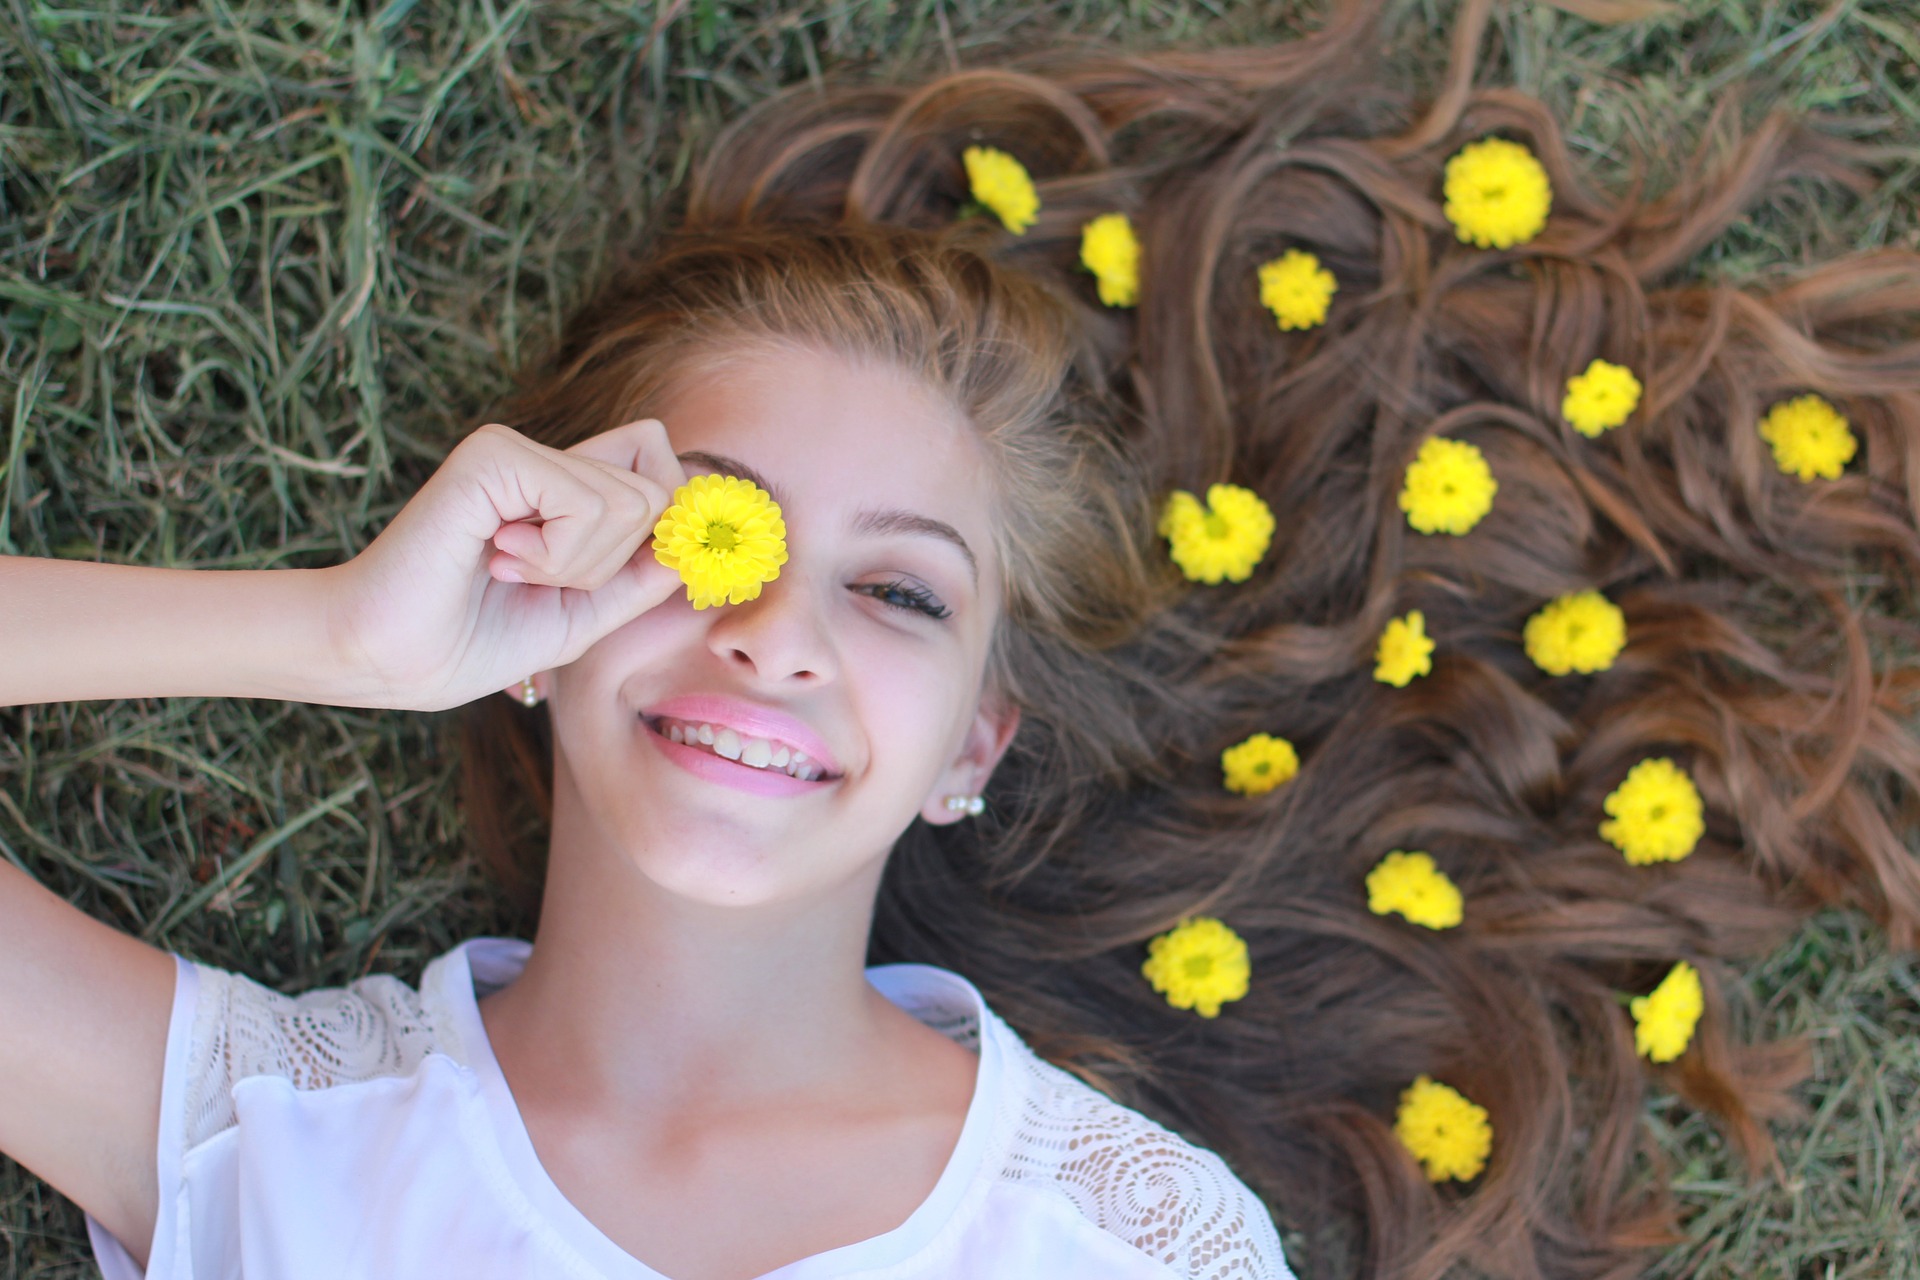 Ein Mädchen mit langen hellbraunen Haaren liegt auf einer grünen Wiese und lacht, vor ihr rechtes Auge hält sie eine gelbe Blüte, in ihren Haaren liegen weitere gelbe Blüten